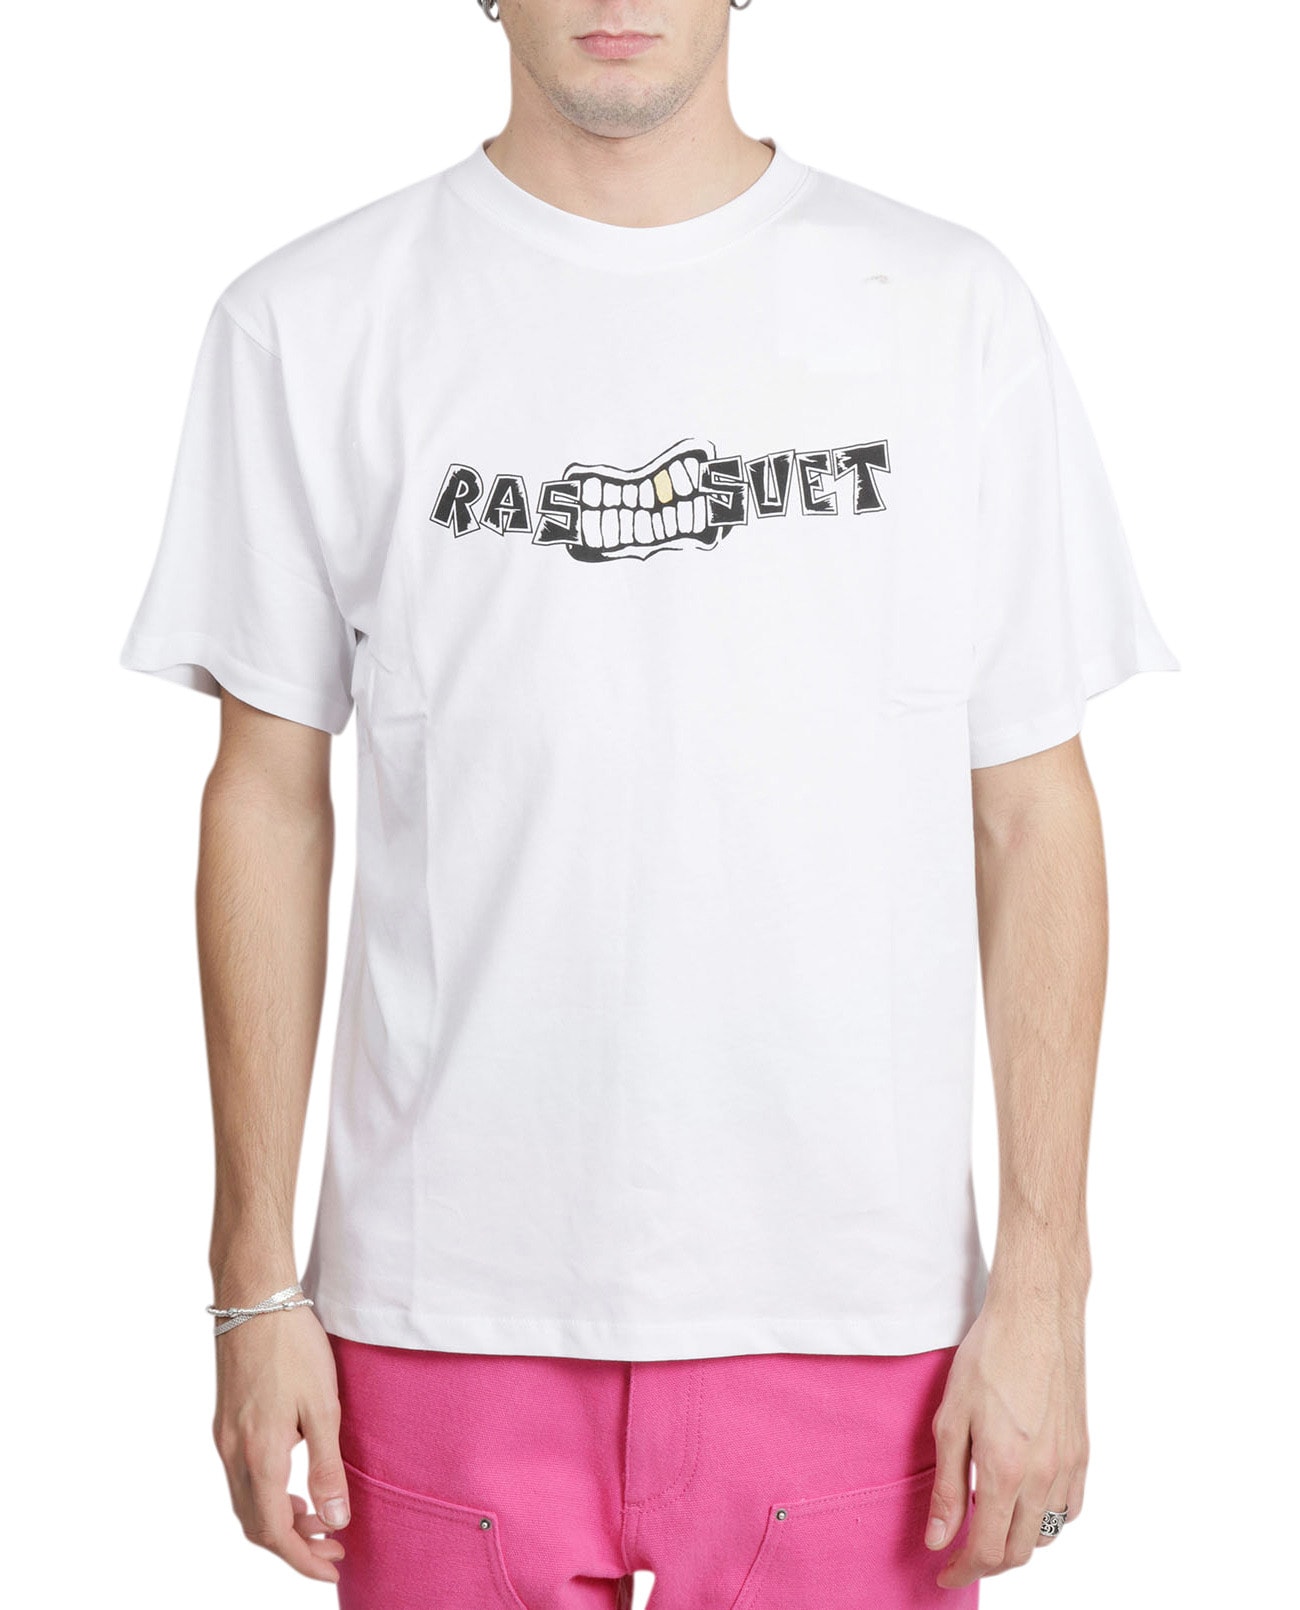 PACCBET Rassvet White Teeth T-shirt